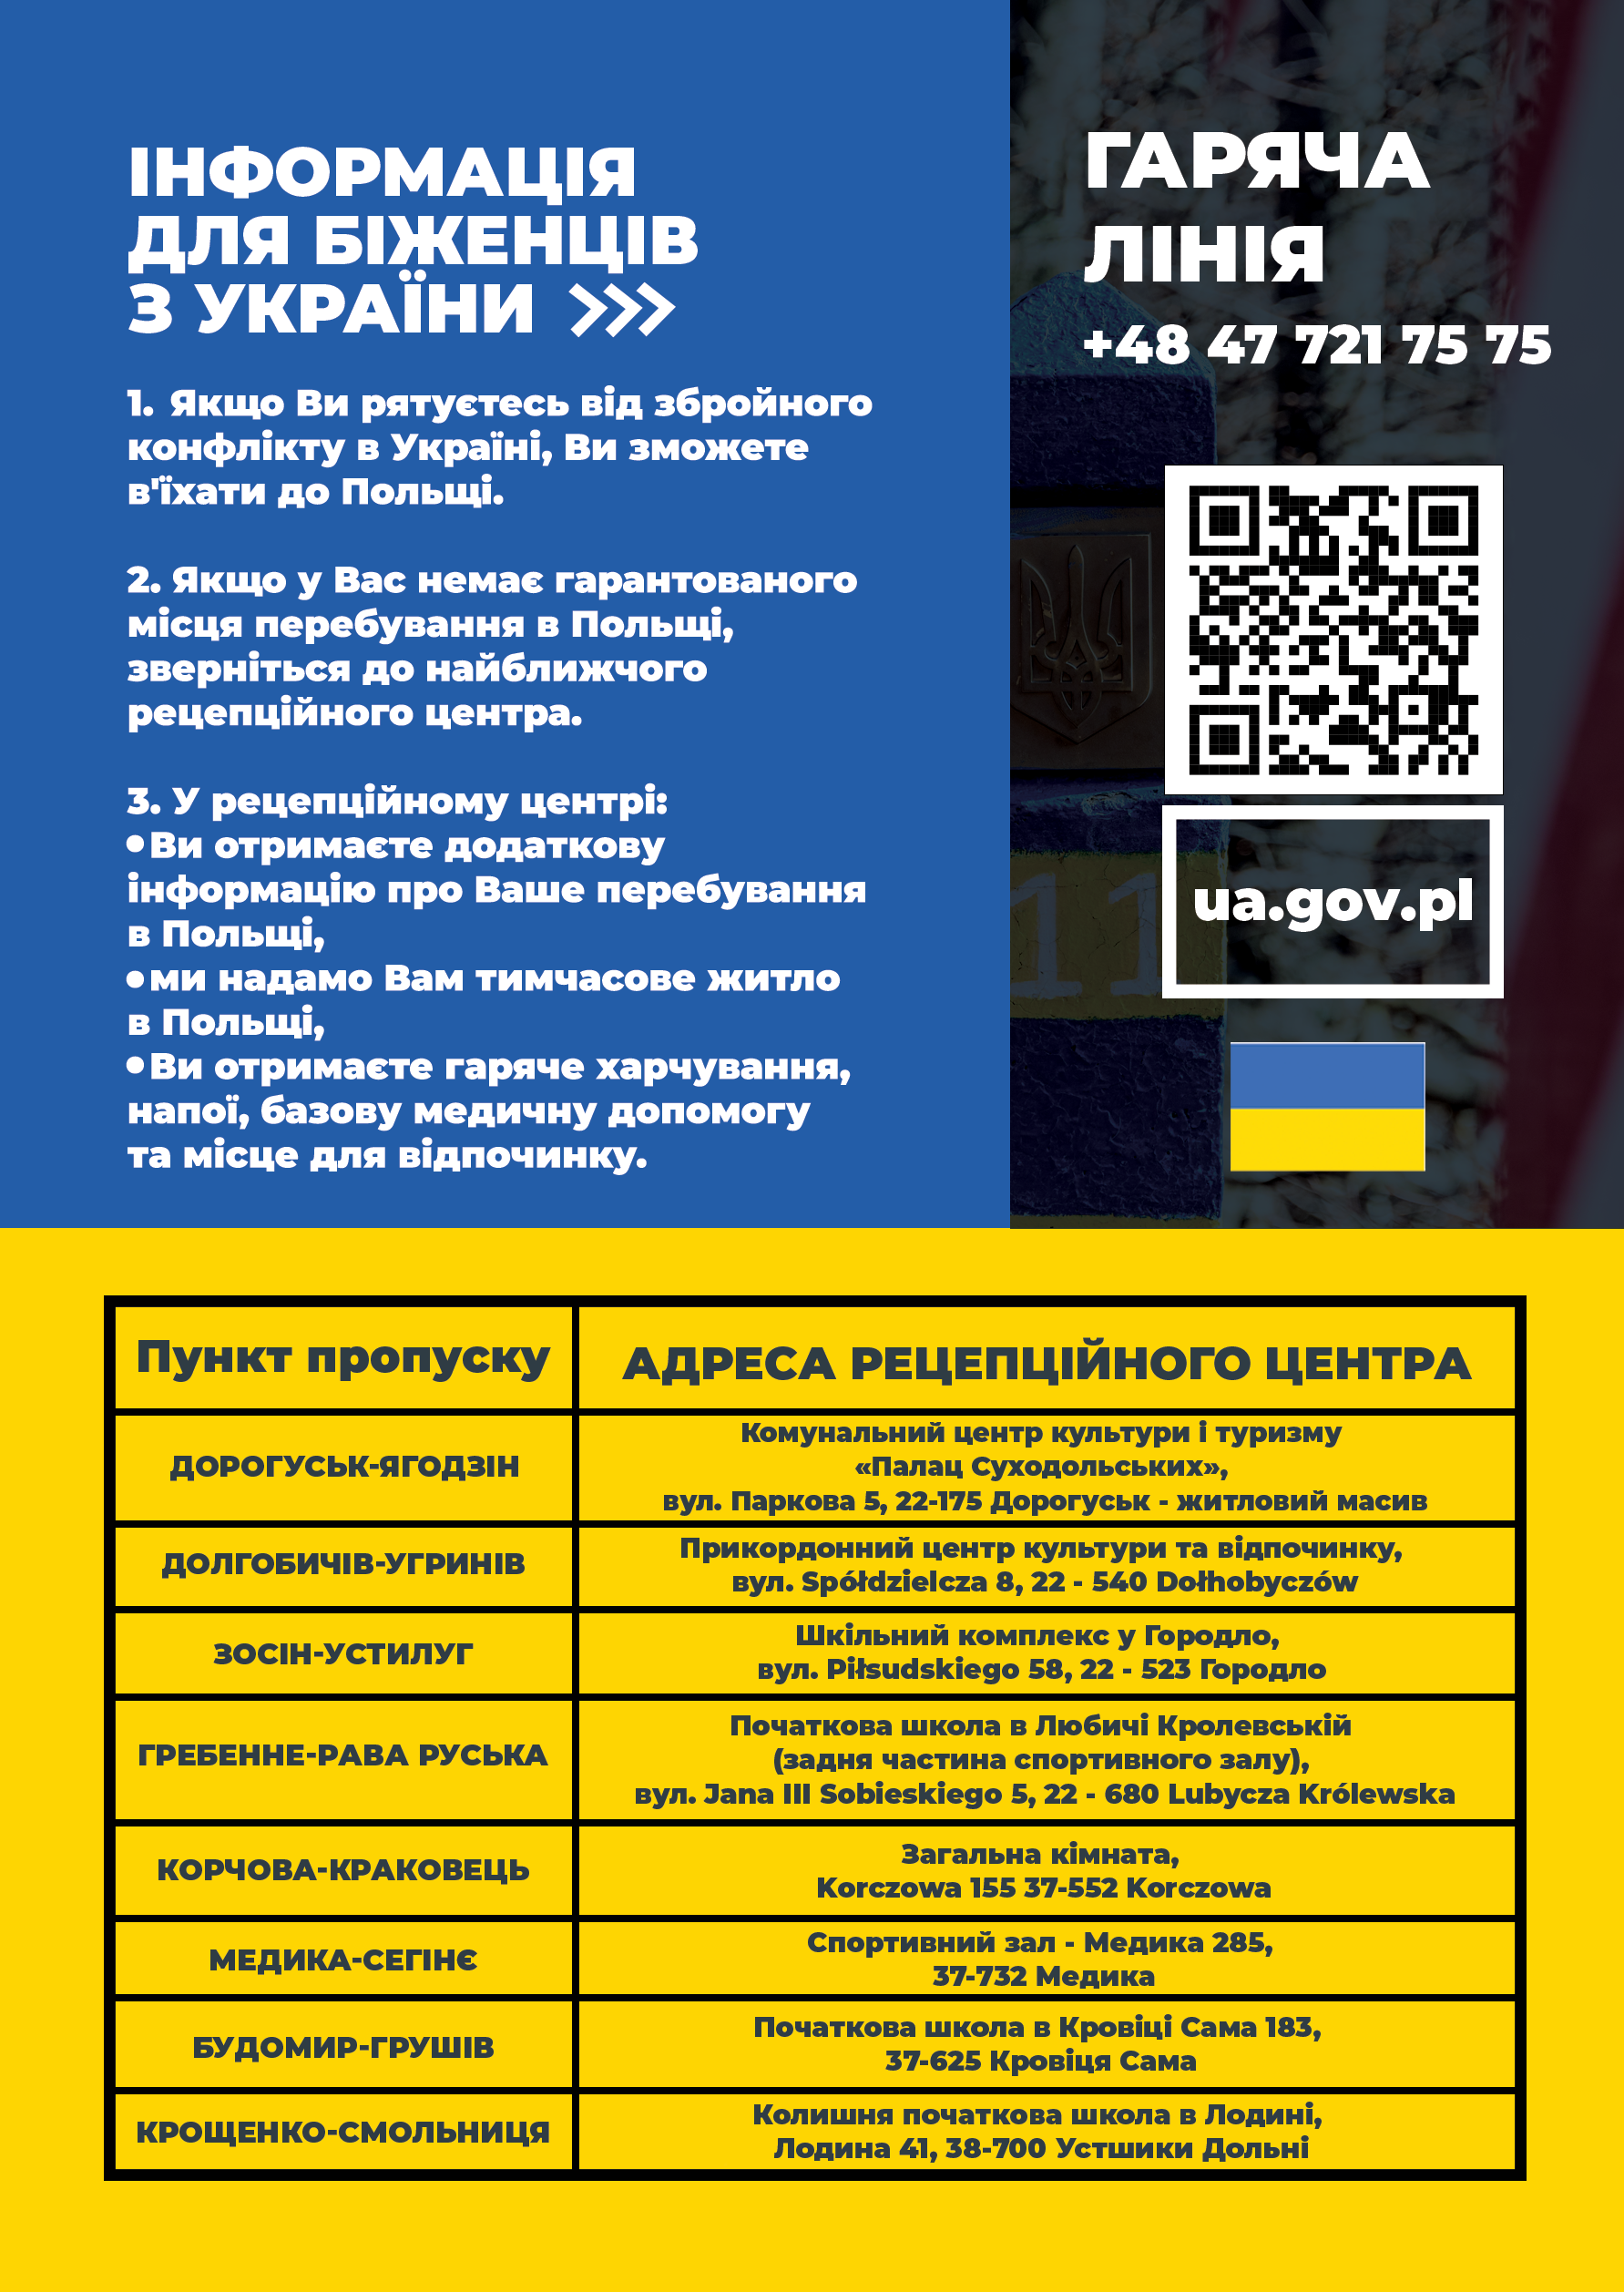 załącznik 2 - informacja w formie plakatu w języku ukraińskim.png (1.12 MB)